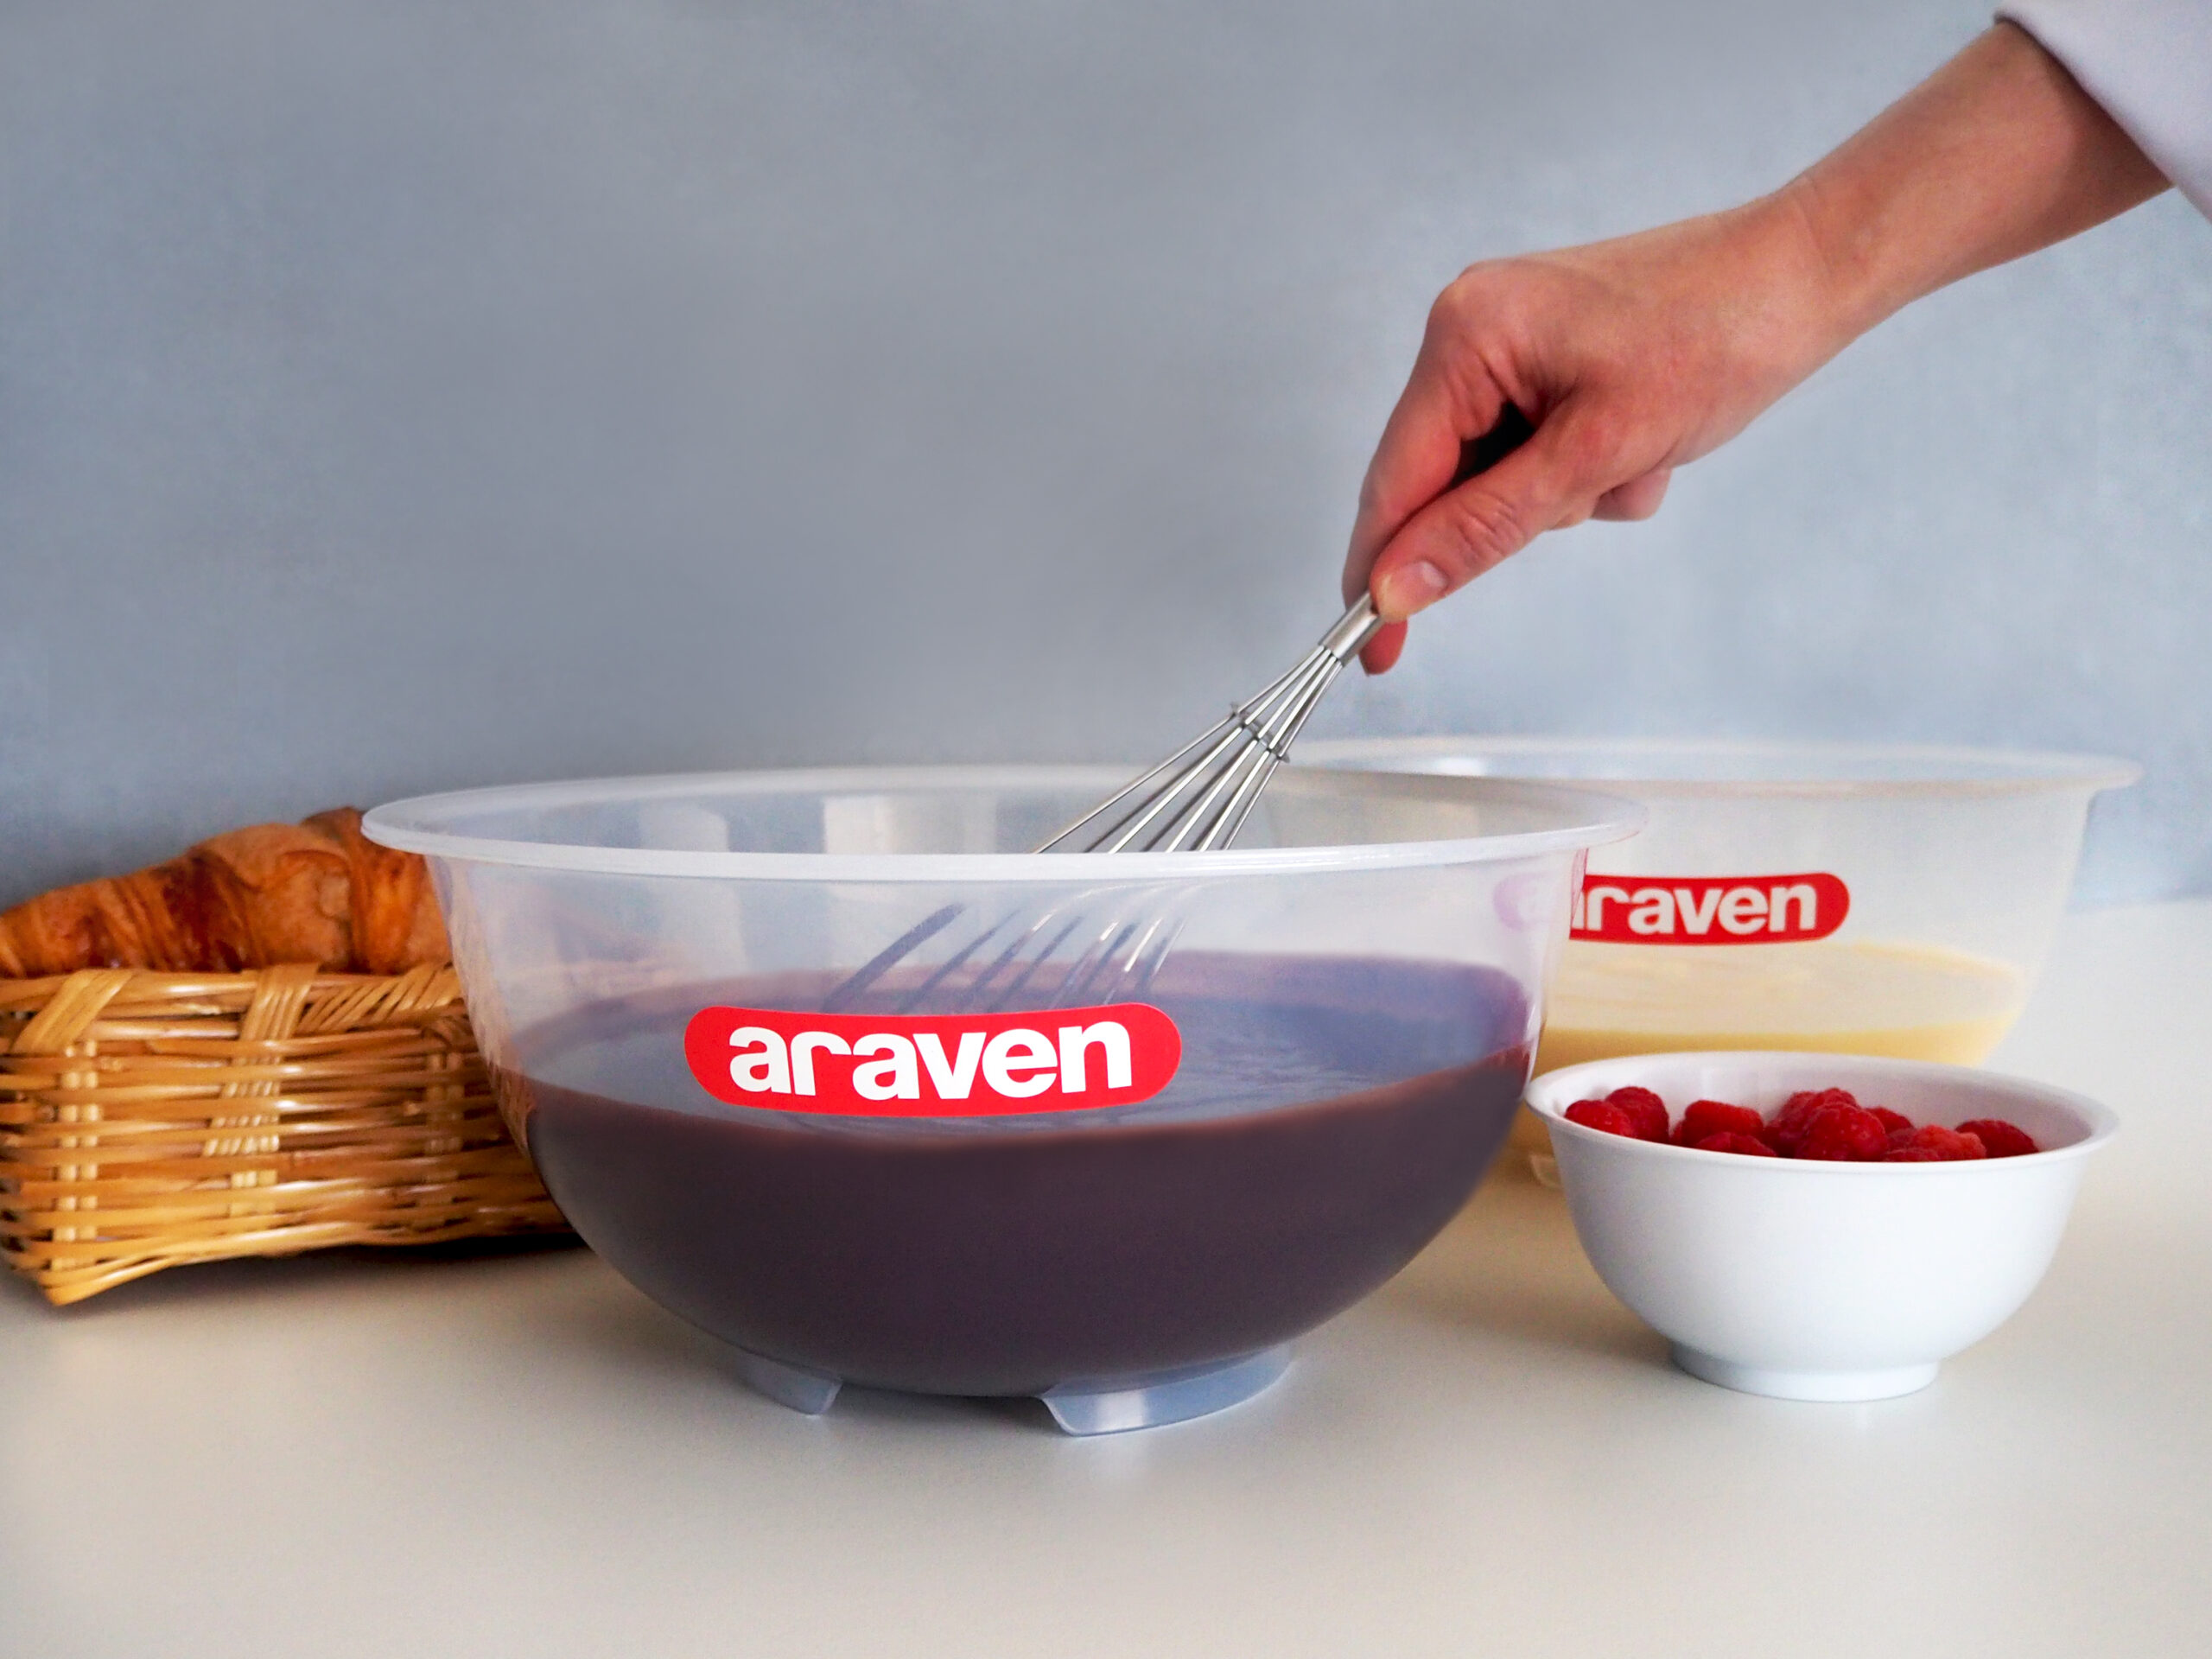 Bowls y escurridores, utensilios de cocina básicos en hostelería - Araven